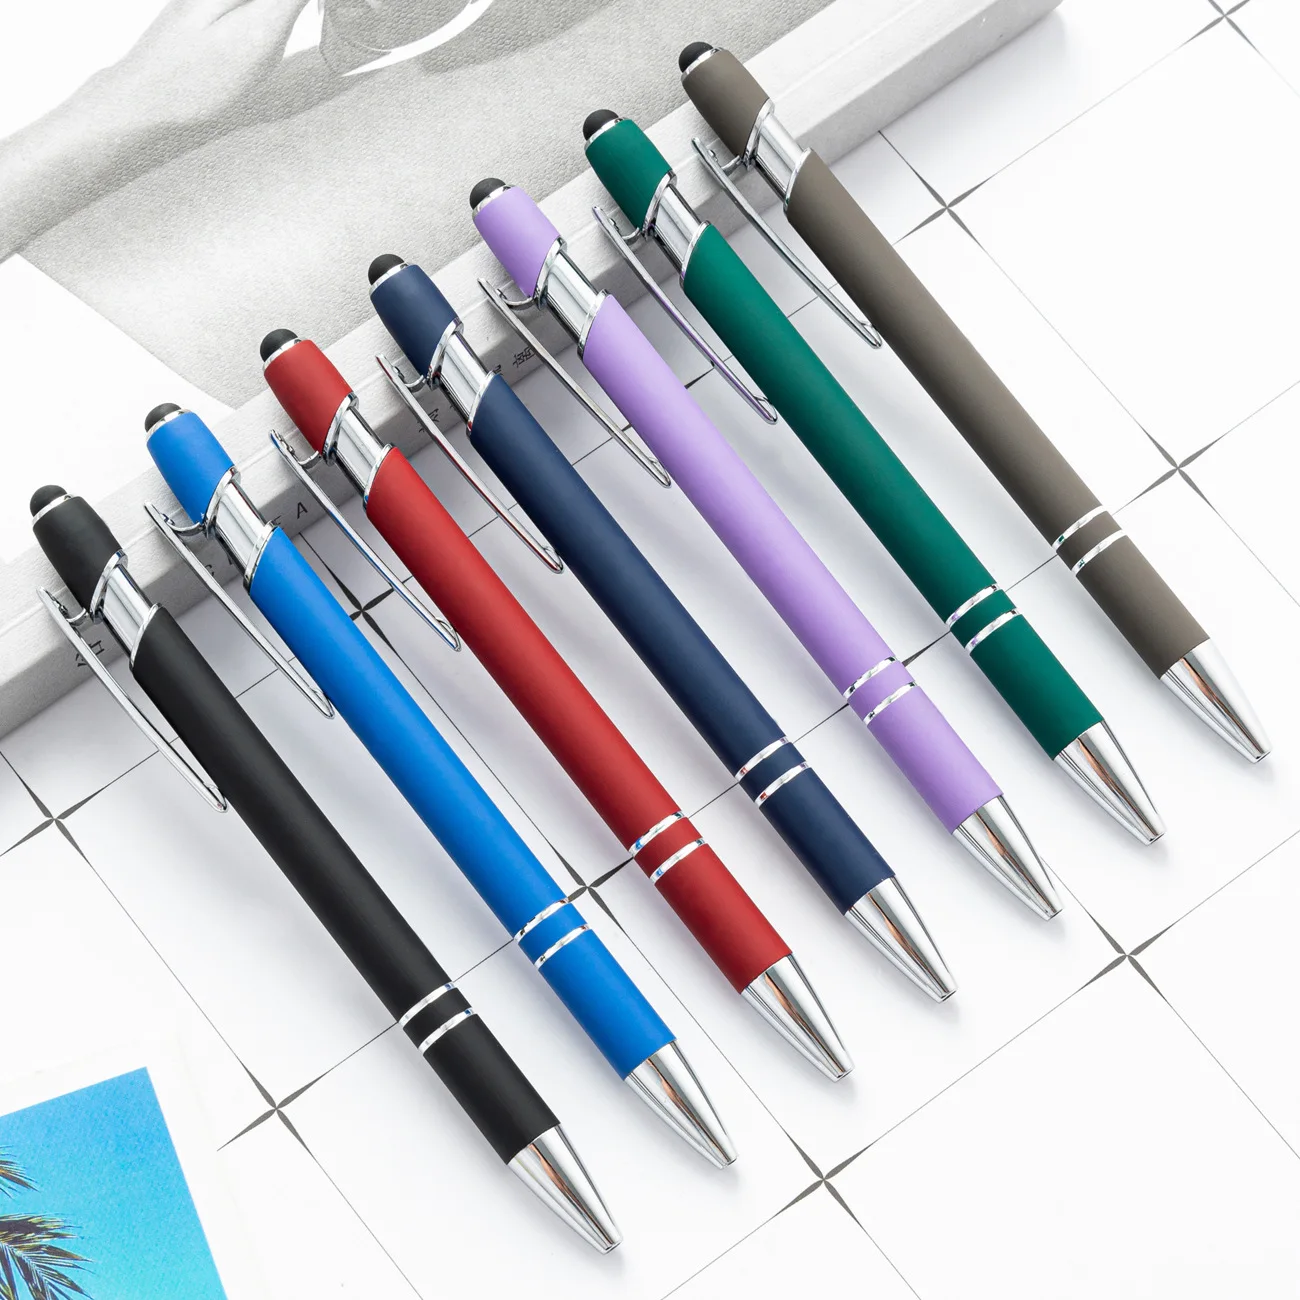 

Шариковая ручка матовая металлическая, креативные ручки, цветные письменные принадлежности, канцелярские принадлежности для офиса, школы, студентов, 10 шт./комплект